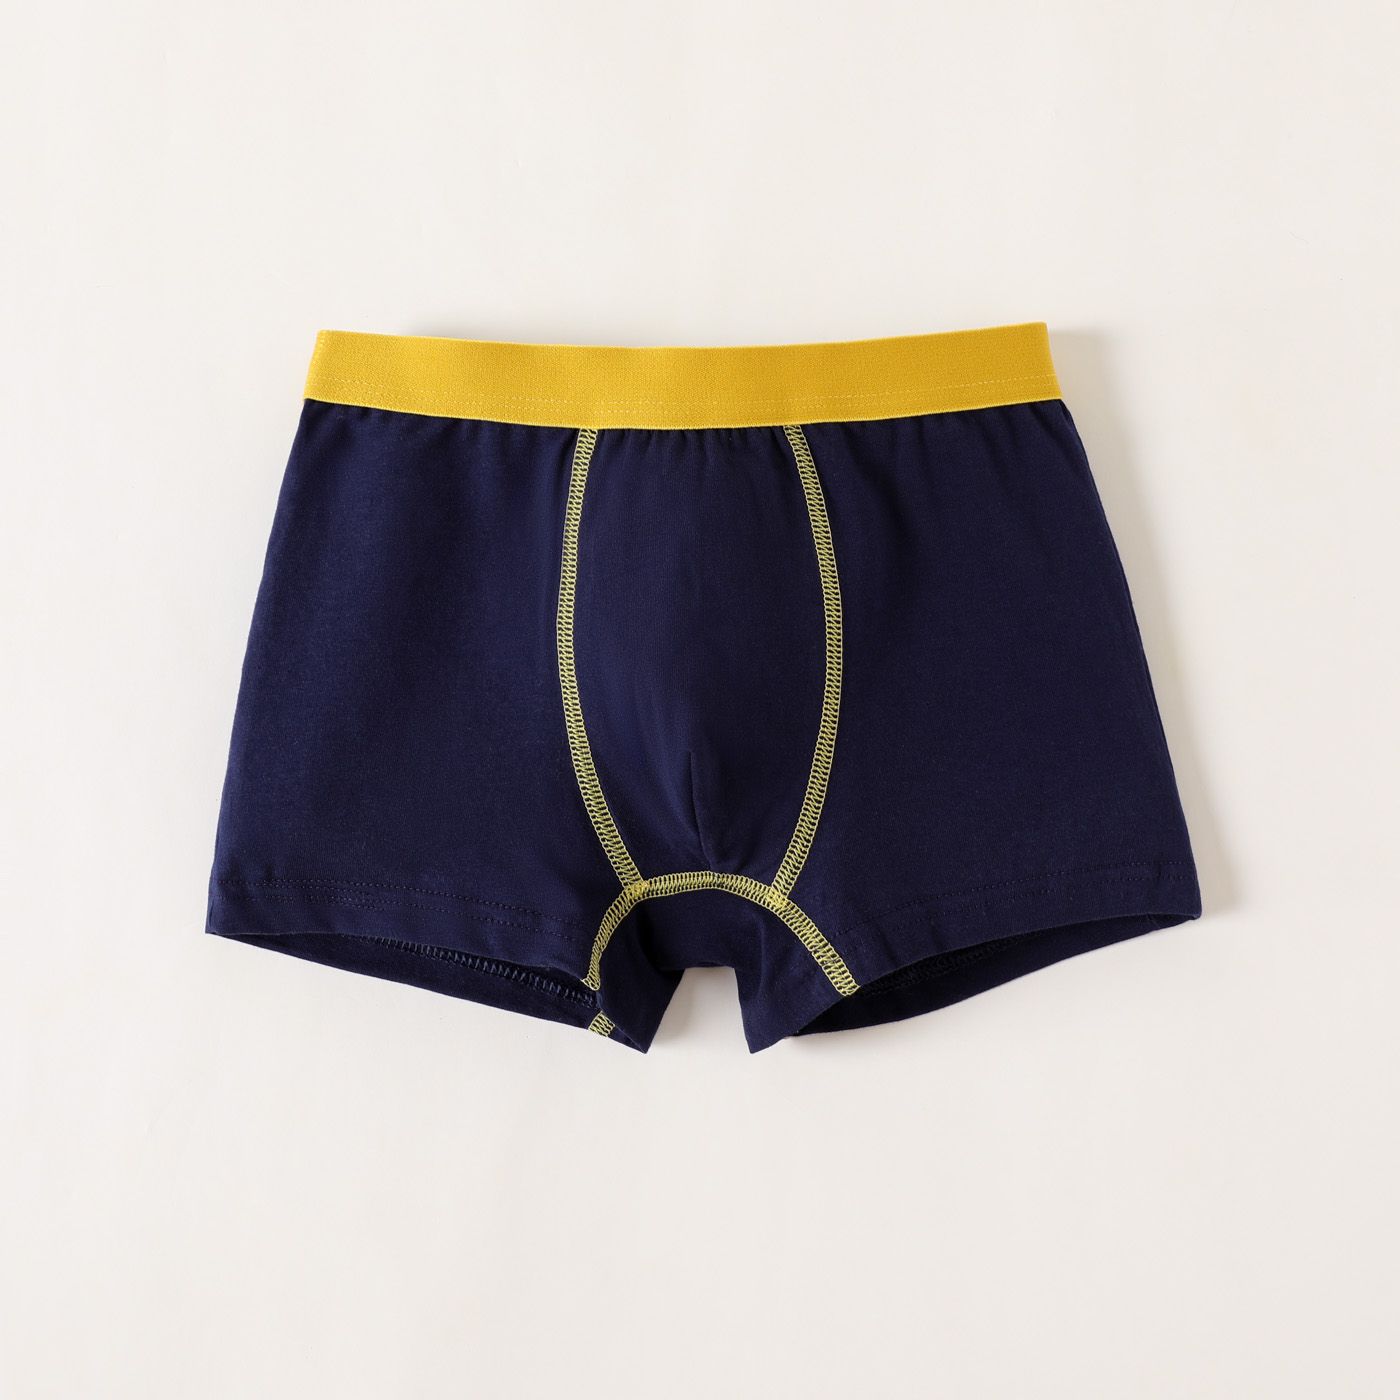 

Kid Boy Basic BoXer Briefs Underwear